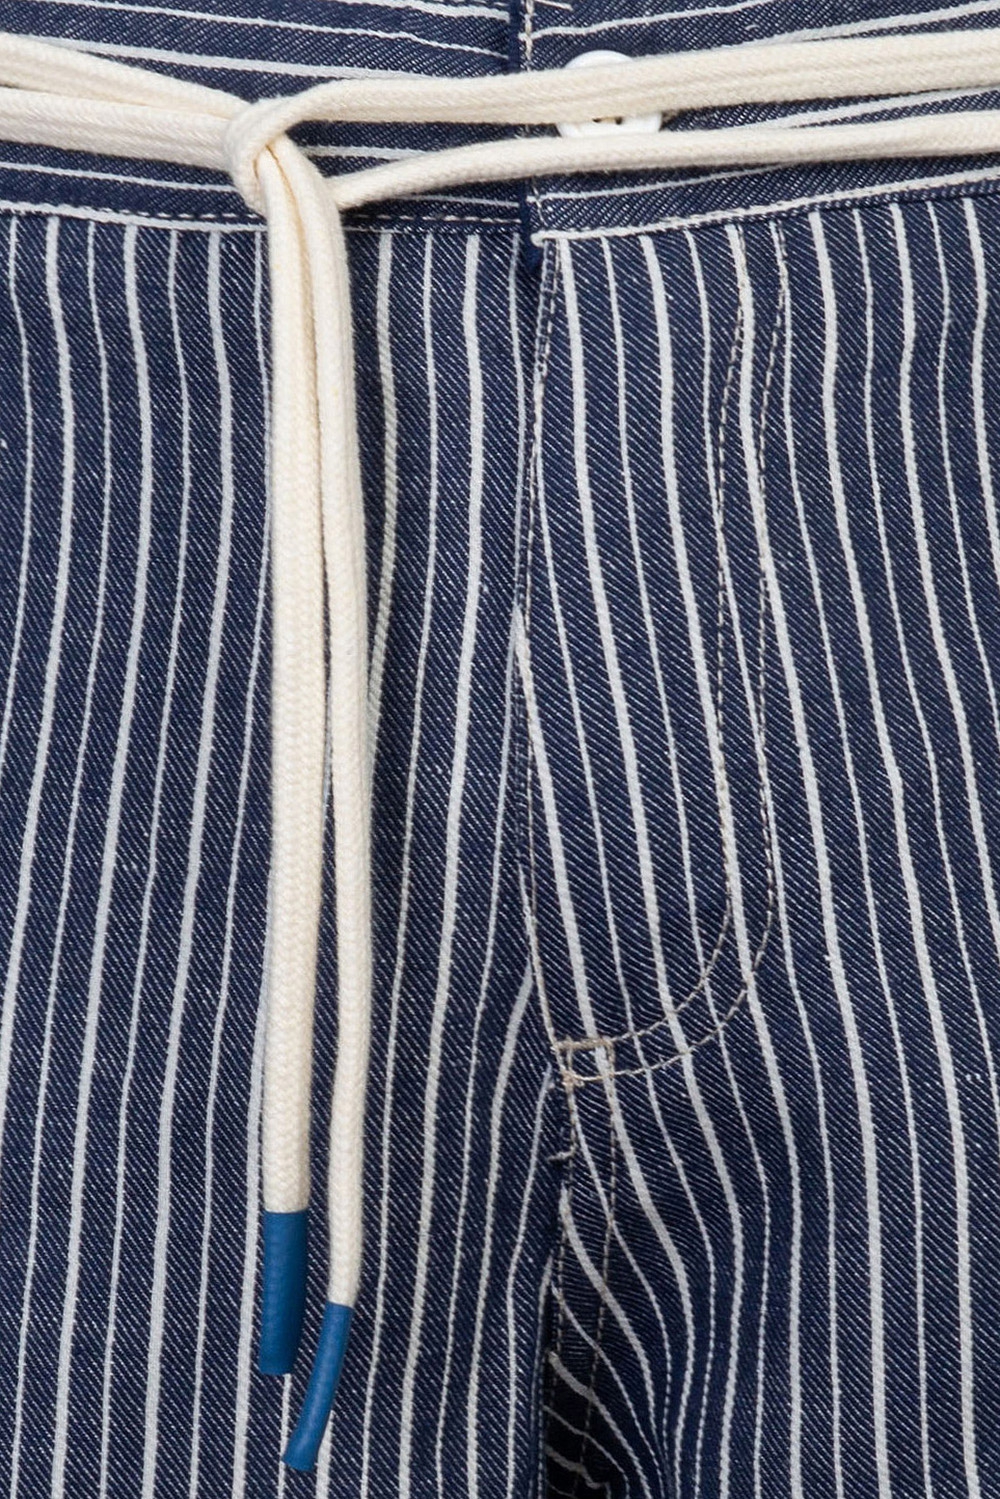 Pantaloni slim bleumarin in dungi 1